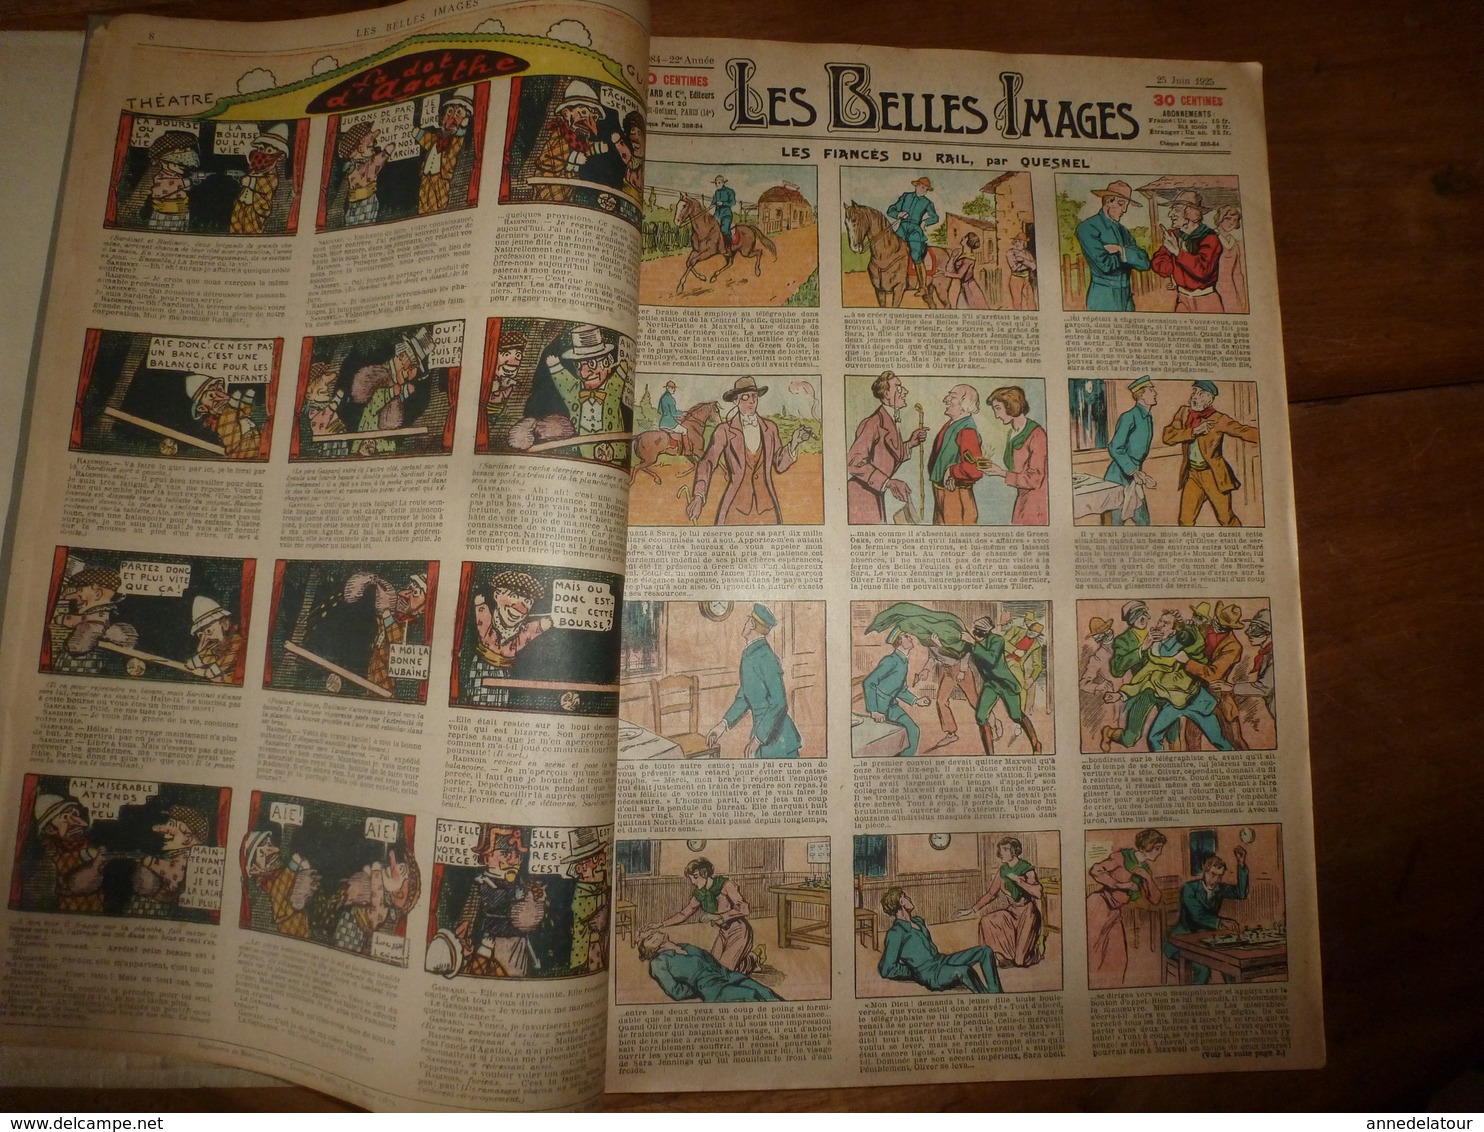 1925-1926 Album des BELLES IMAGES  du N° 1082 daté 11 juin 1925 au N° 1132 daté 27 mai 1926  (51 journaux)